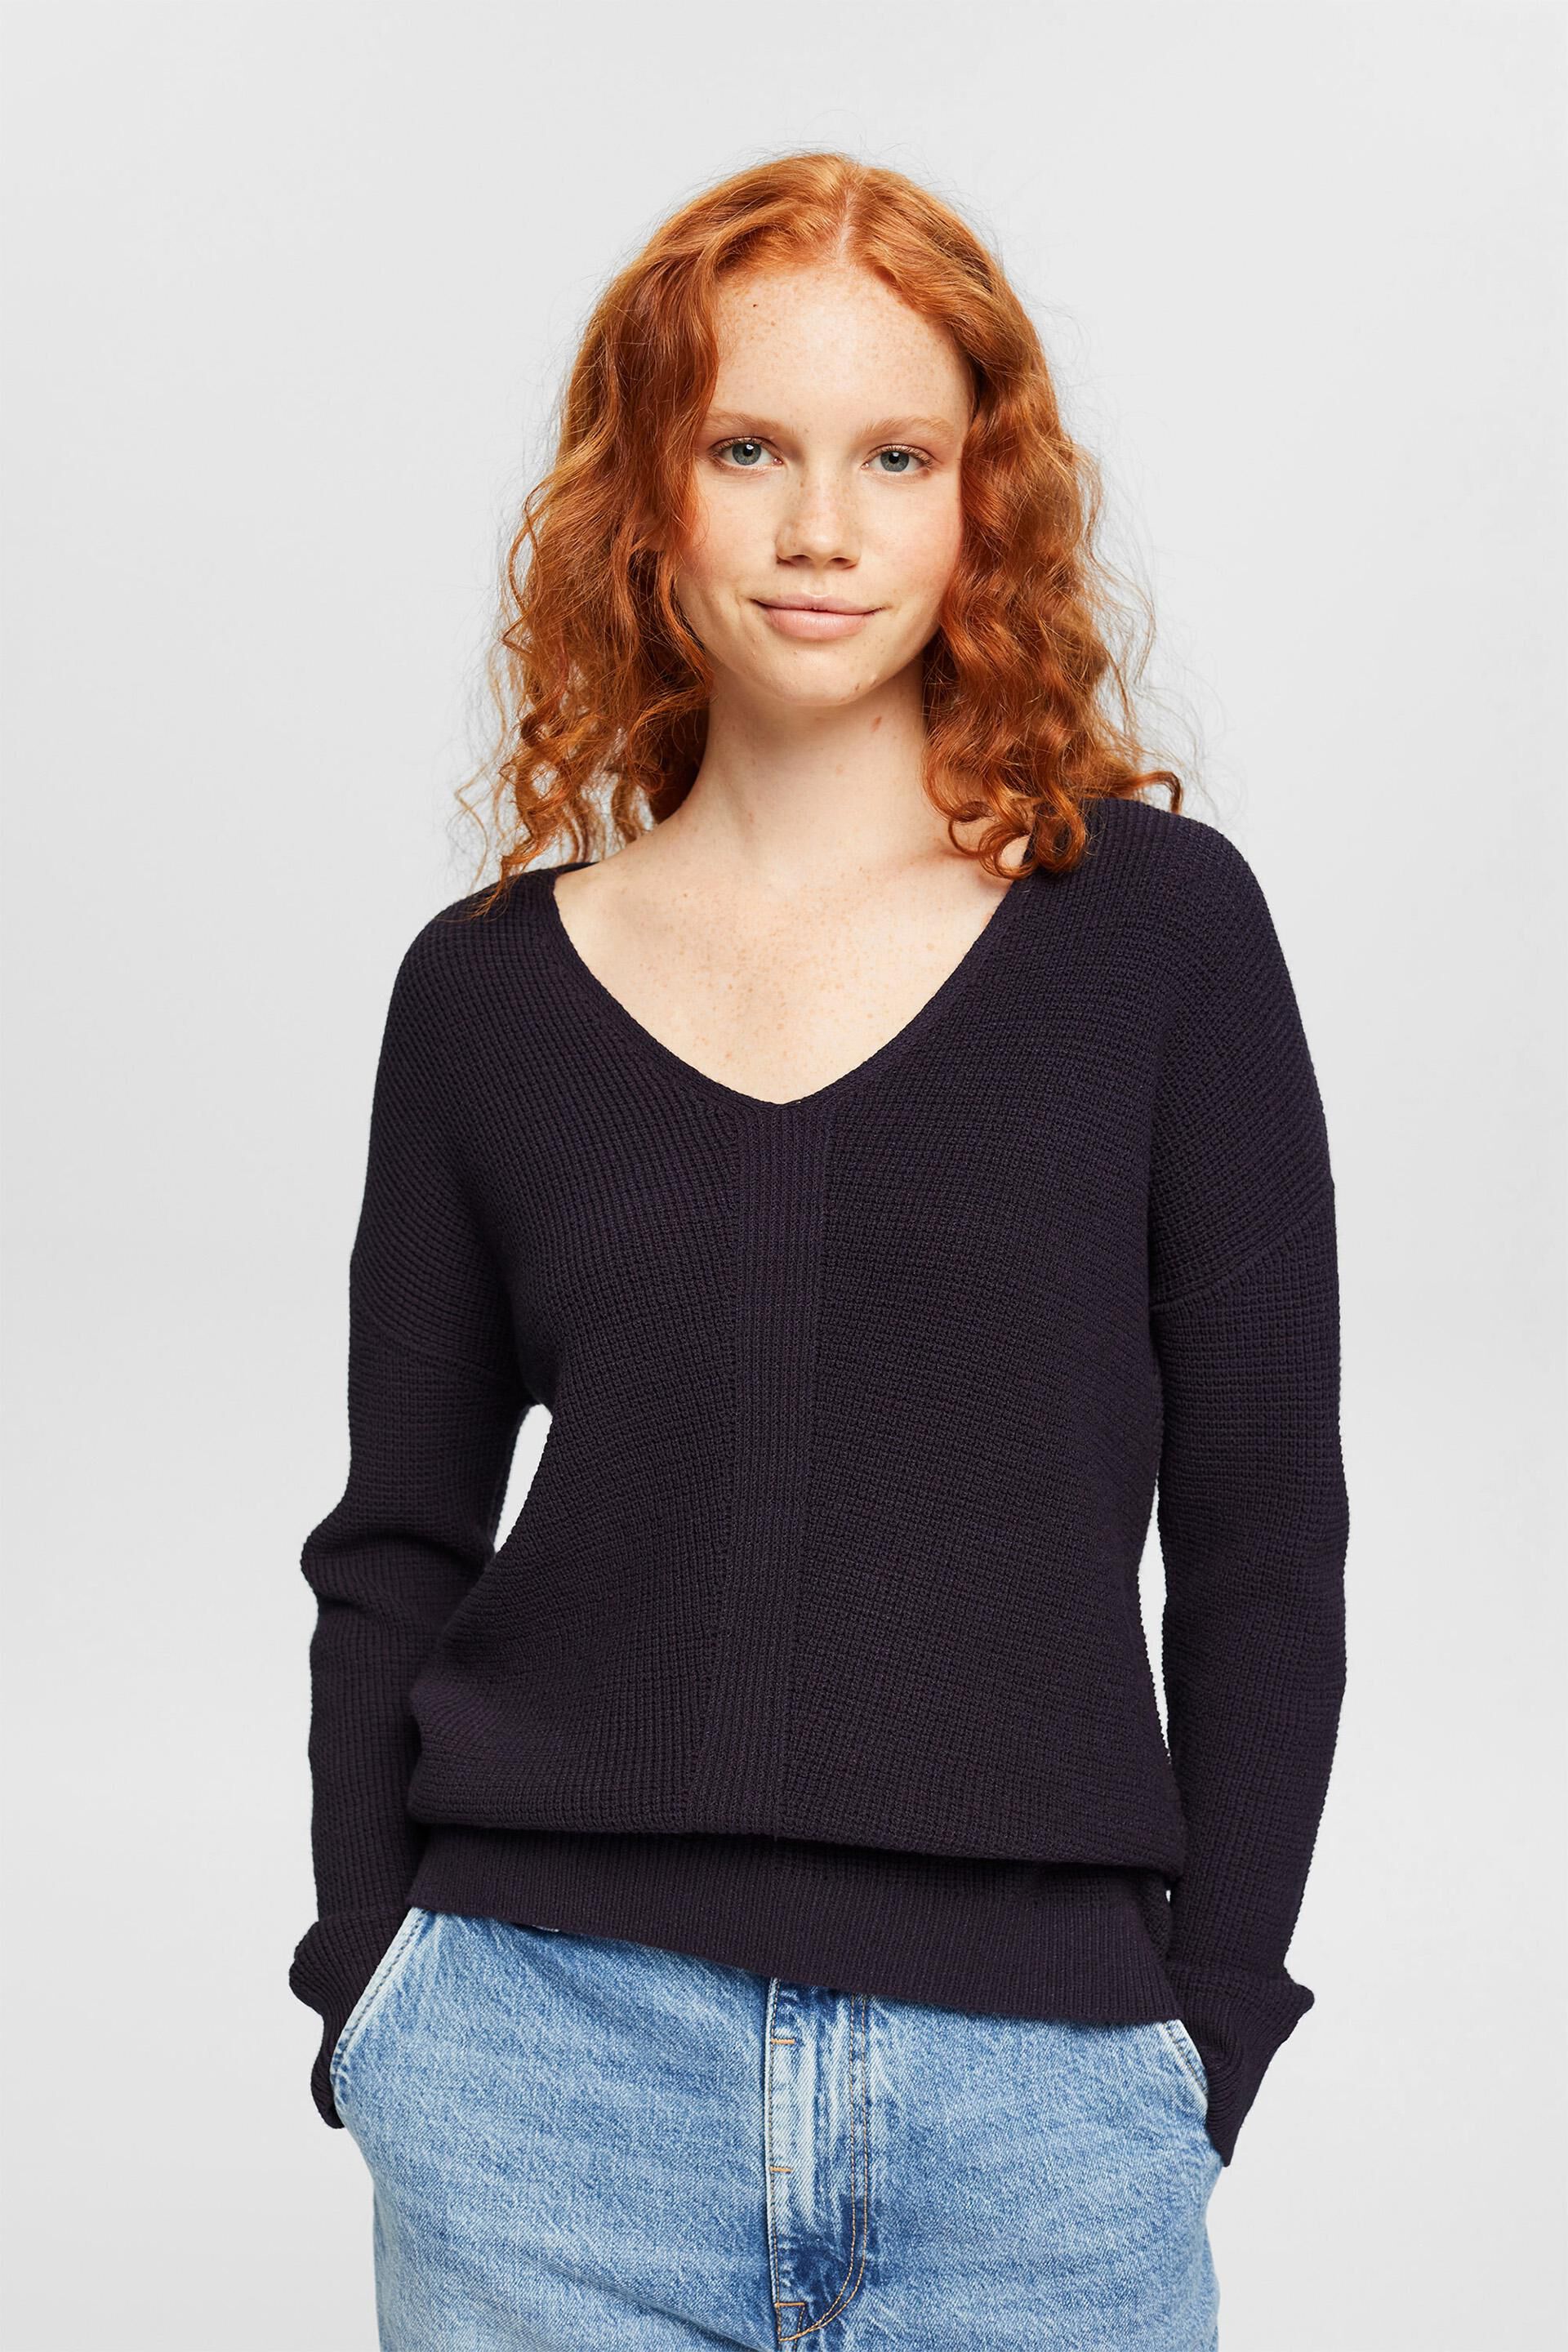 Esprit Loose V-neck knit jumper